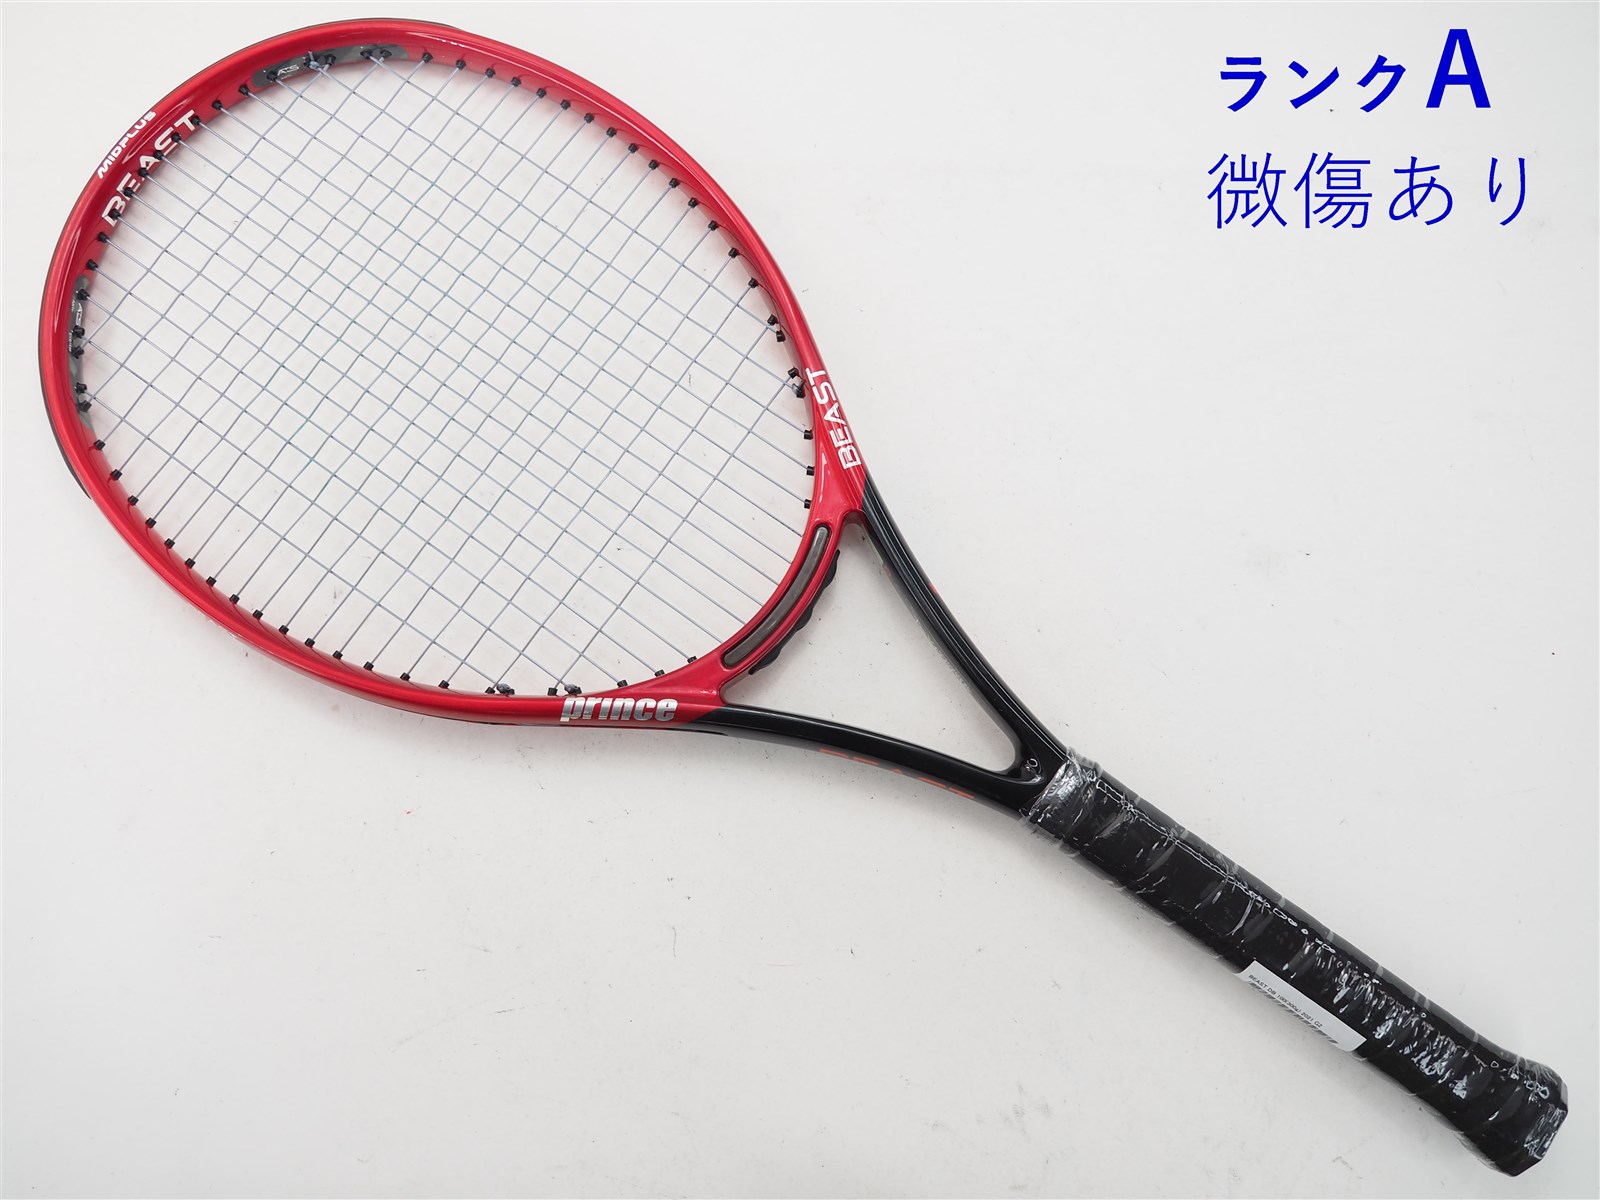 【中古】プリンス ビースト DB 100(300g) 2021年モデルPRINCE BEAST DB 100(300g) 2021(G2)【中古  テニスラケット】【送料無料】